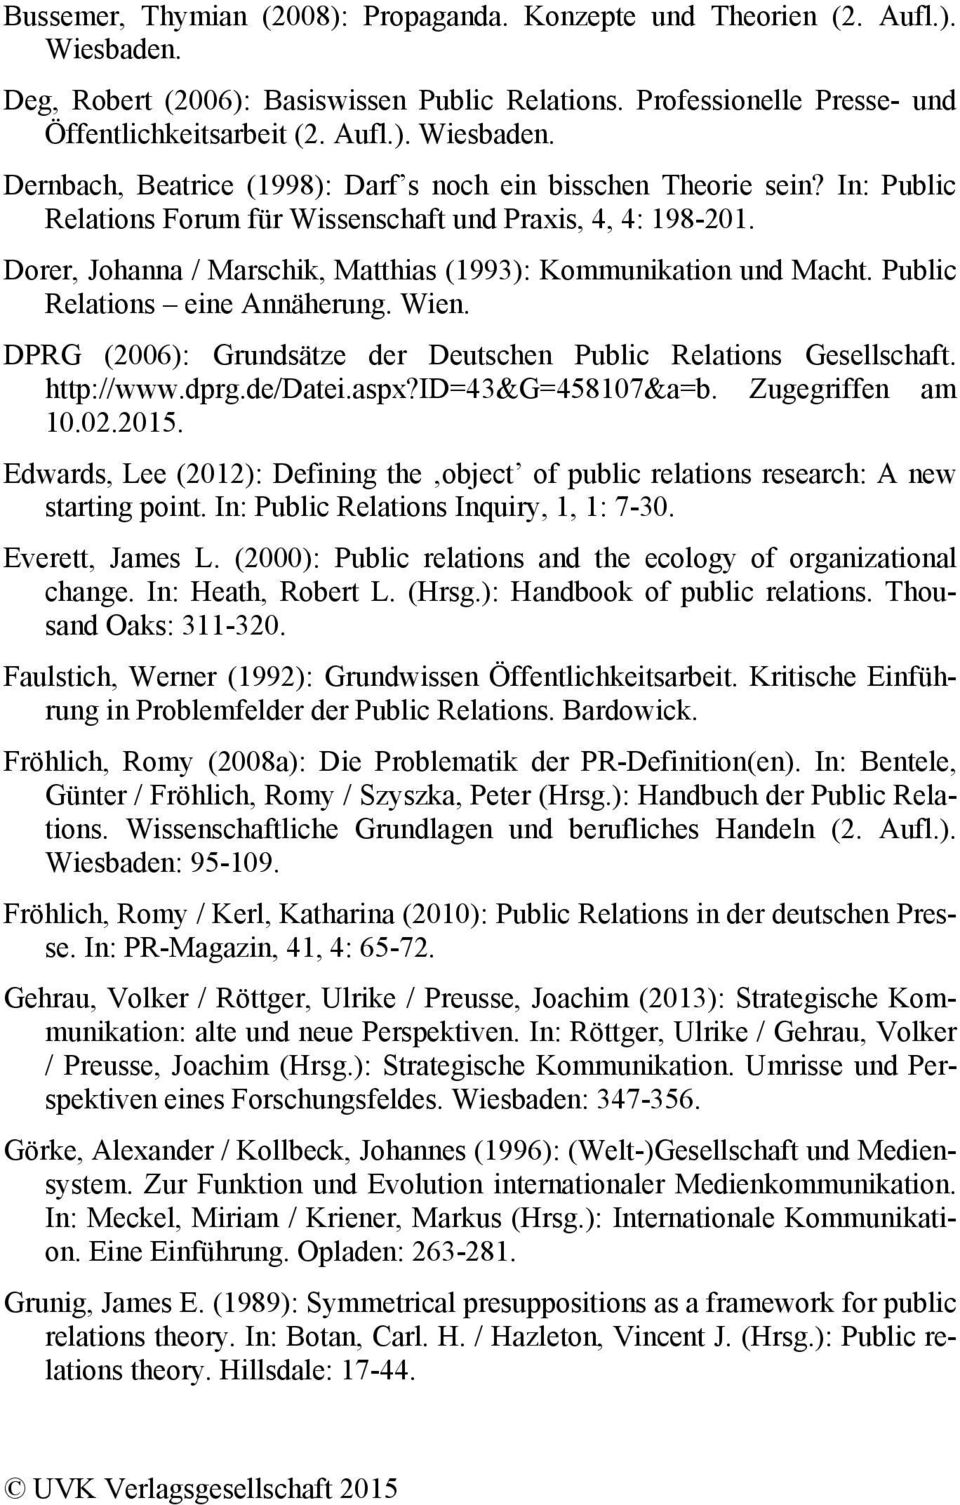 DPRG (2006): Grundsätze der Deutschen Public Relations Gesellschaft. http://www.dprg.de/datei.aspx?id=43&g=458107&a=b. Zugegriffen am 10.02.2015.